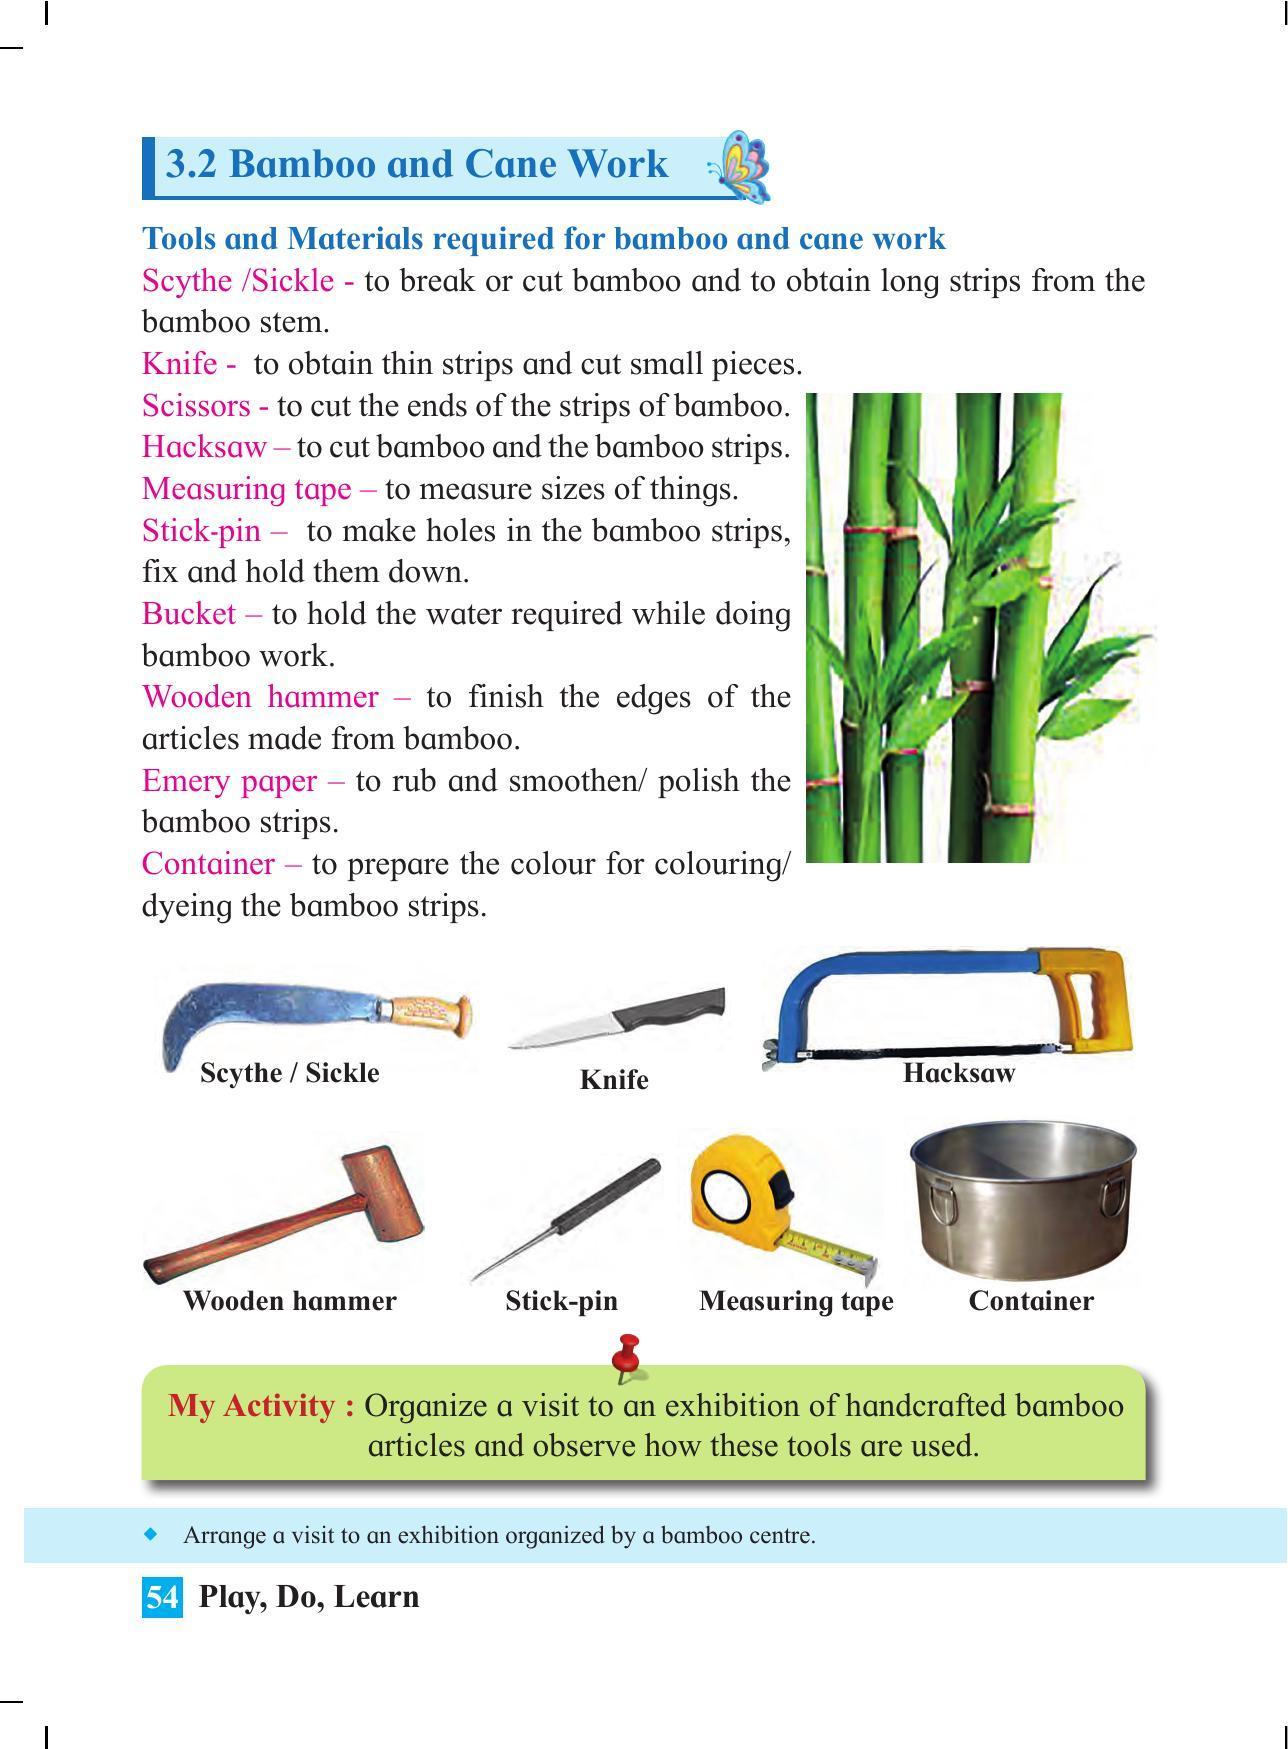 Maharashtra Board Class 4 Play Do Learn (English Medium) Textbook - Page 63